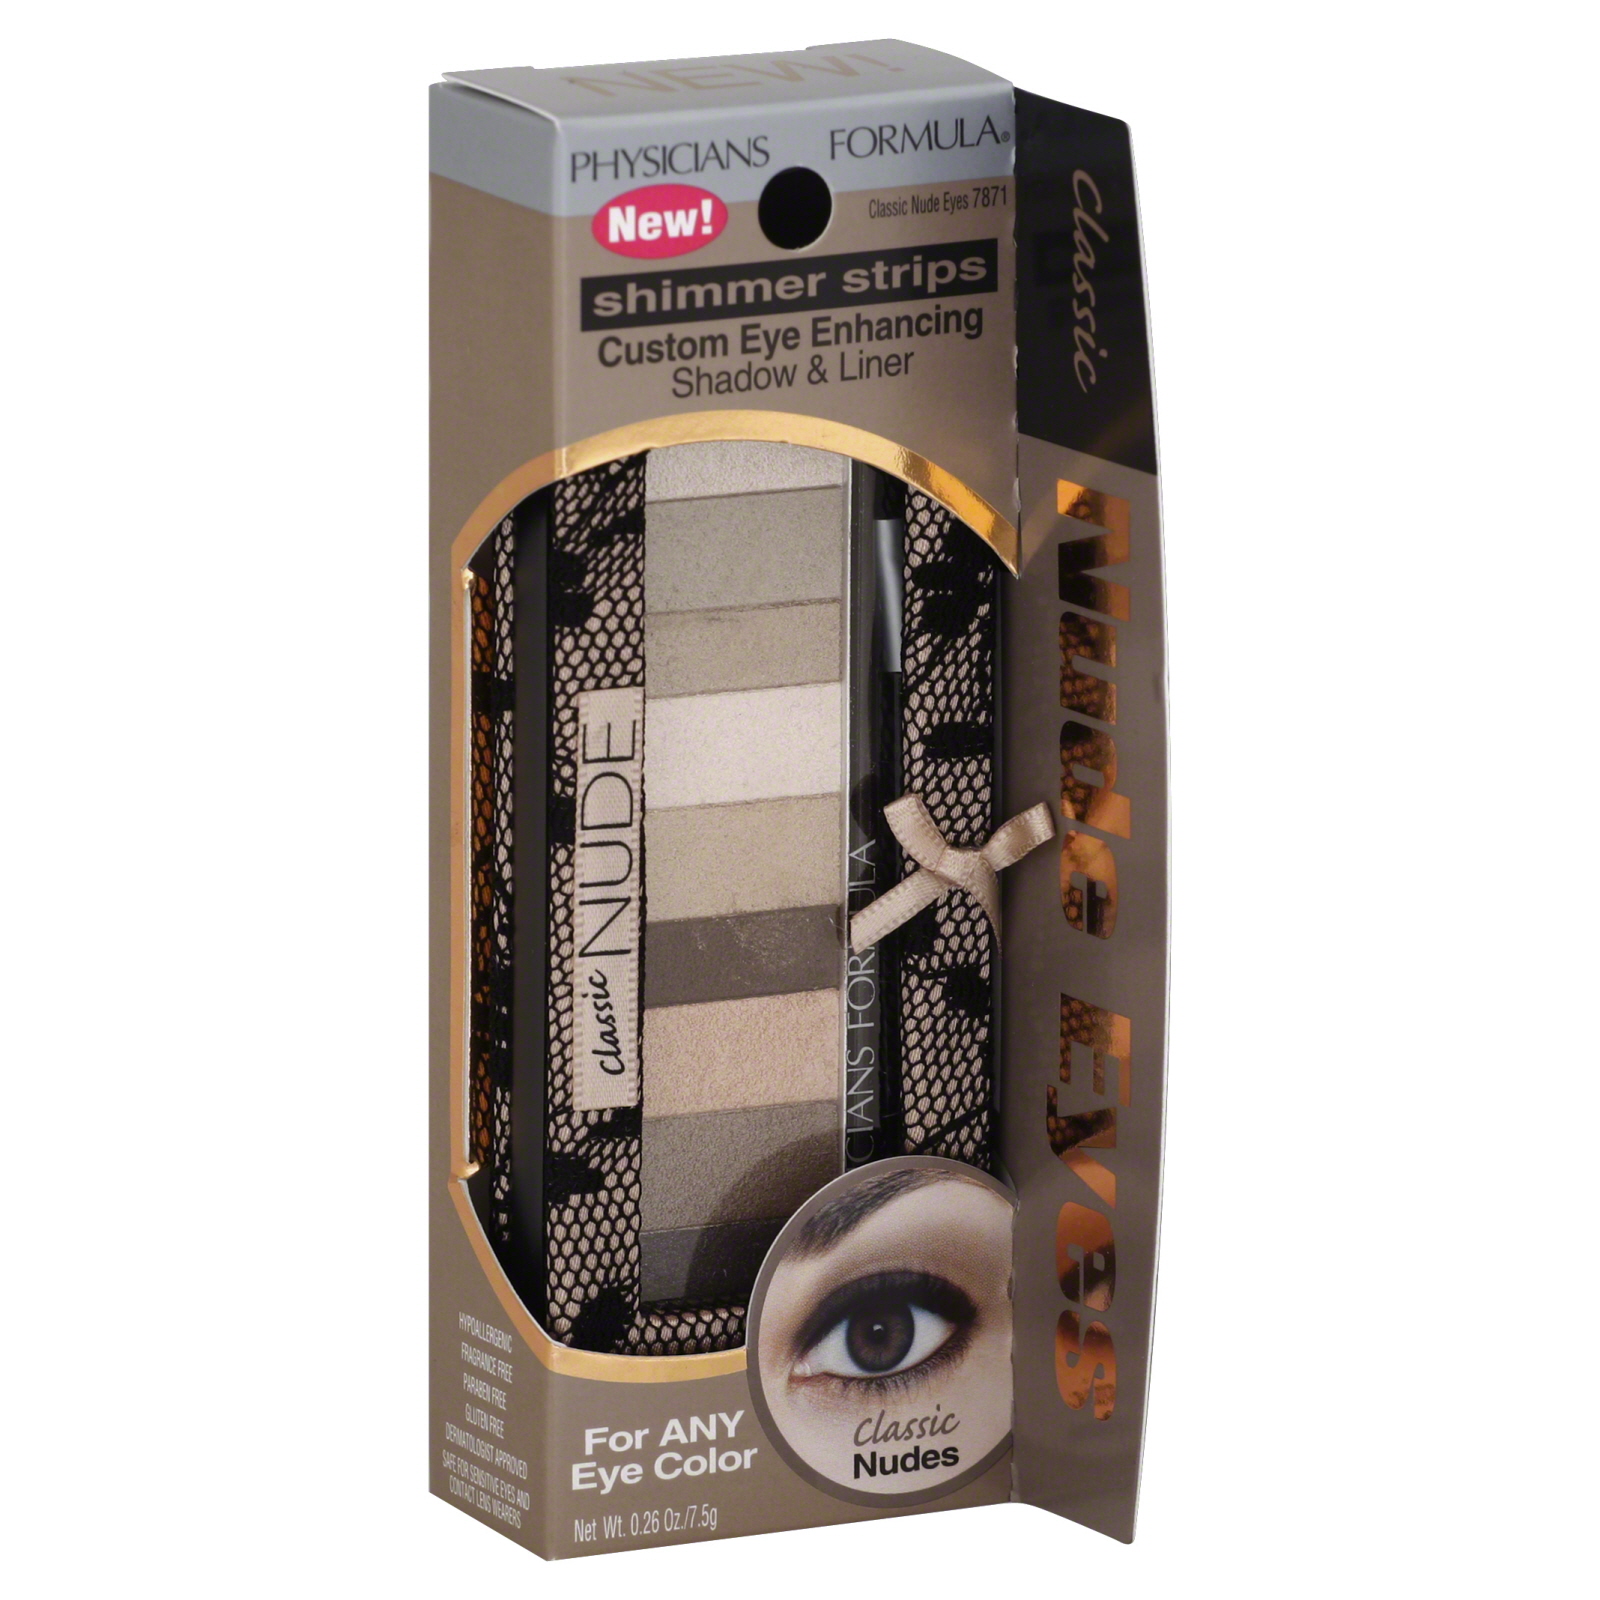 Physicians Formula Shimmer Strips Custom Eye Enhancing Eye Shadow Classic Nudes 0.26 oz